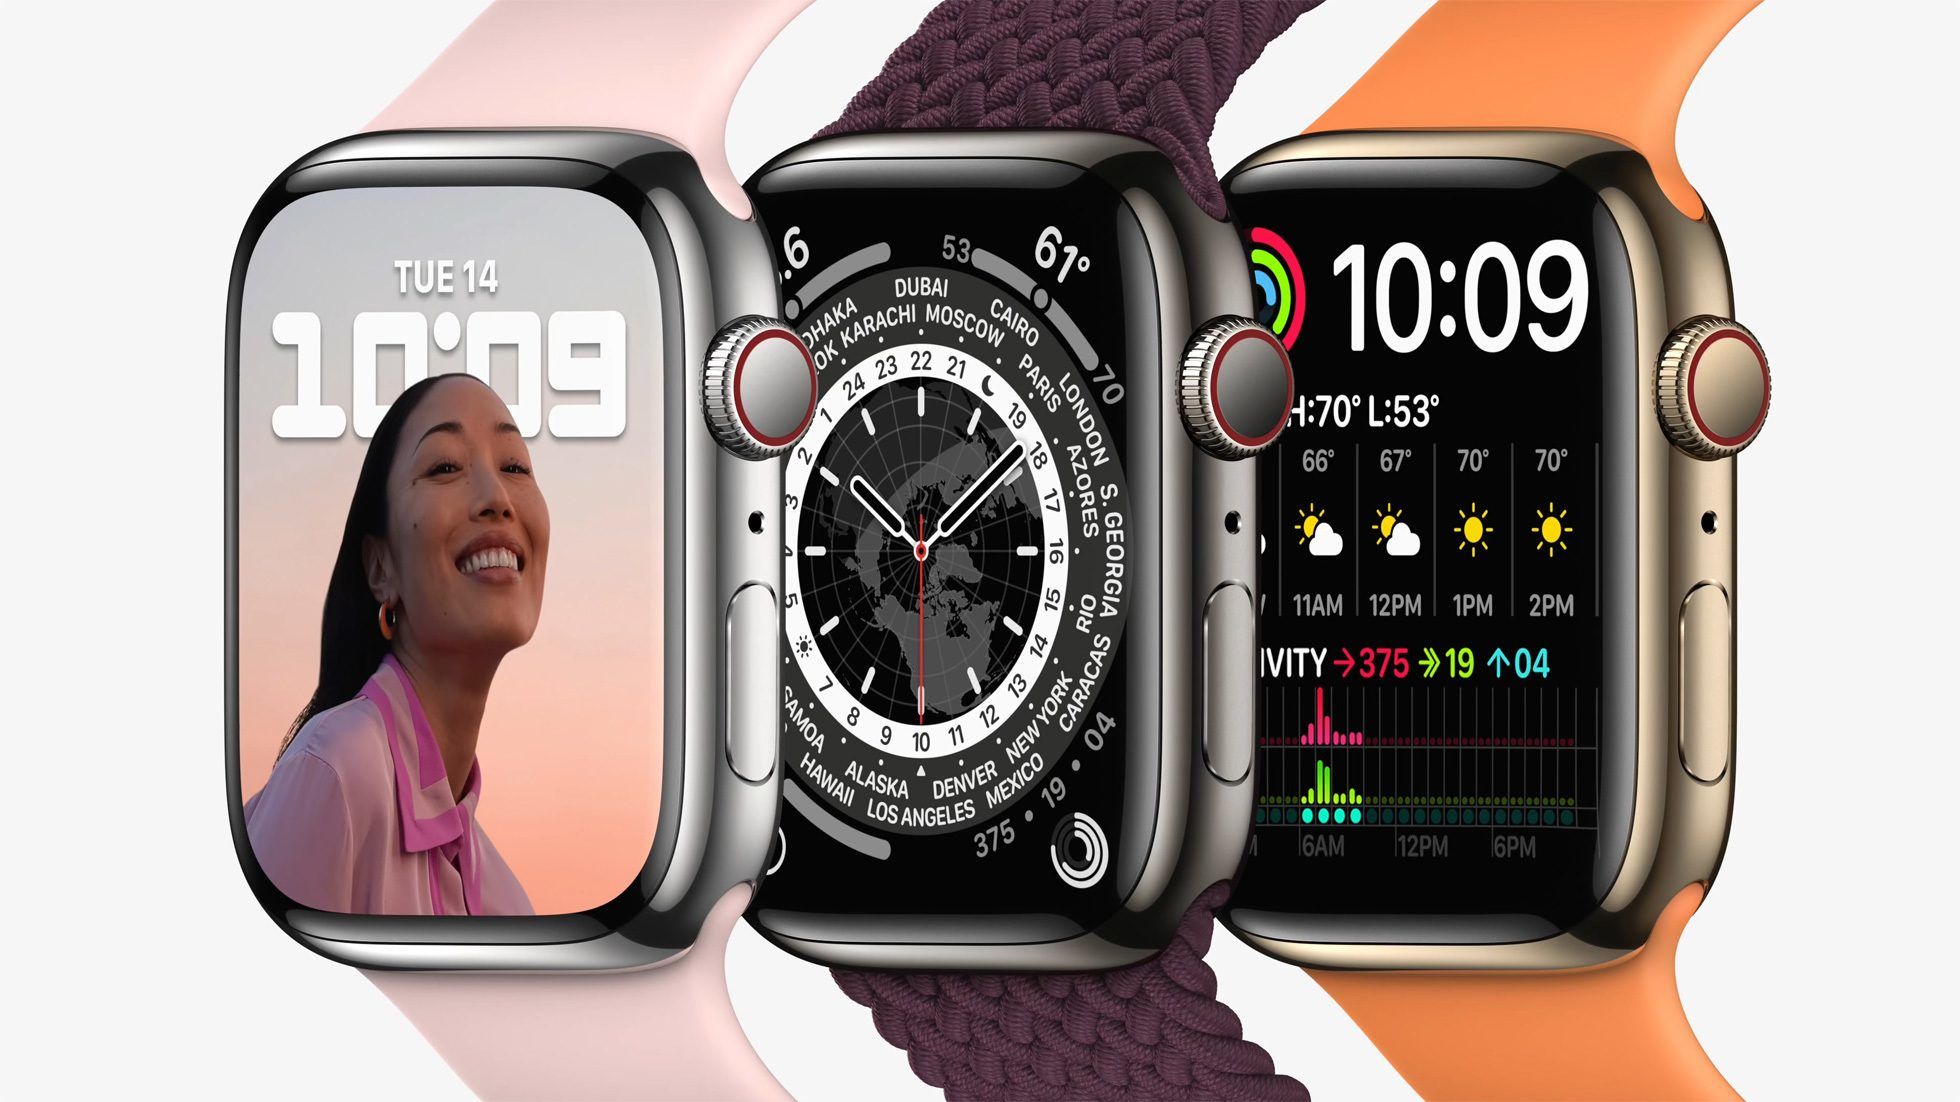 Apple презентувала Apple Watch Series 7 зі збільшеним екраном і 18-годинною автономністю